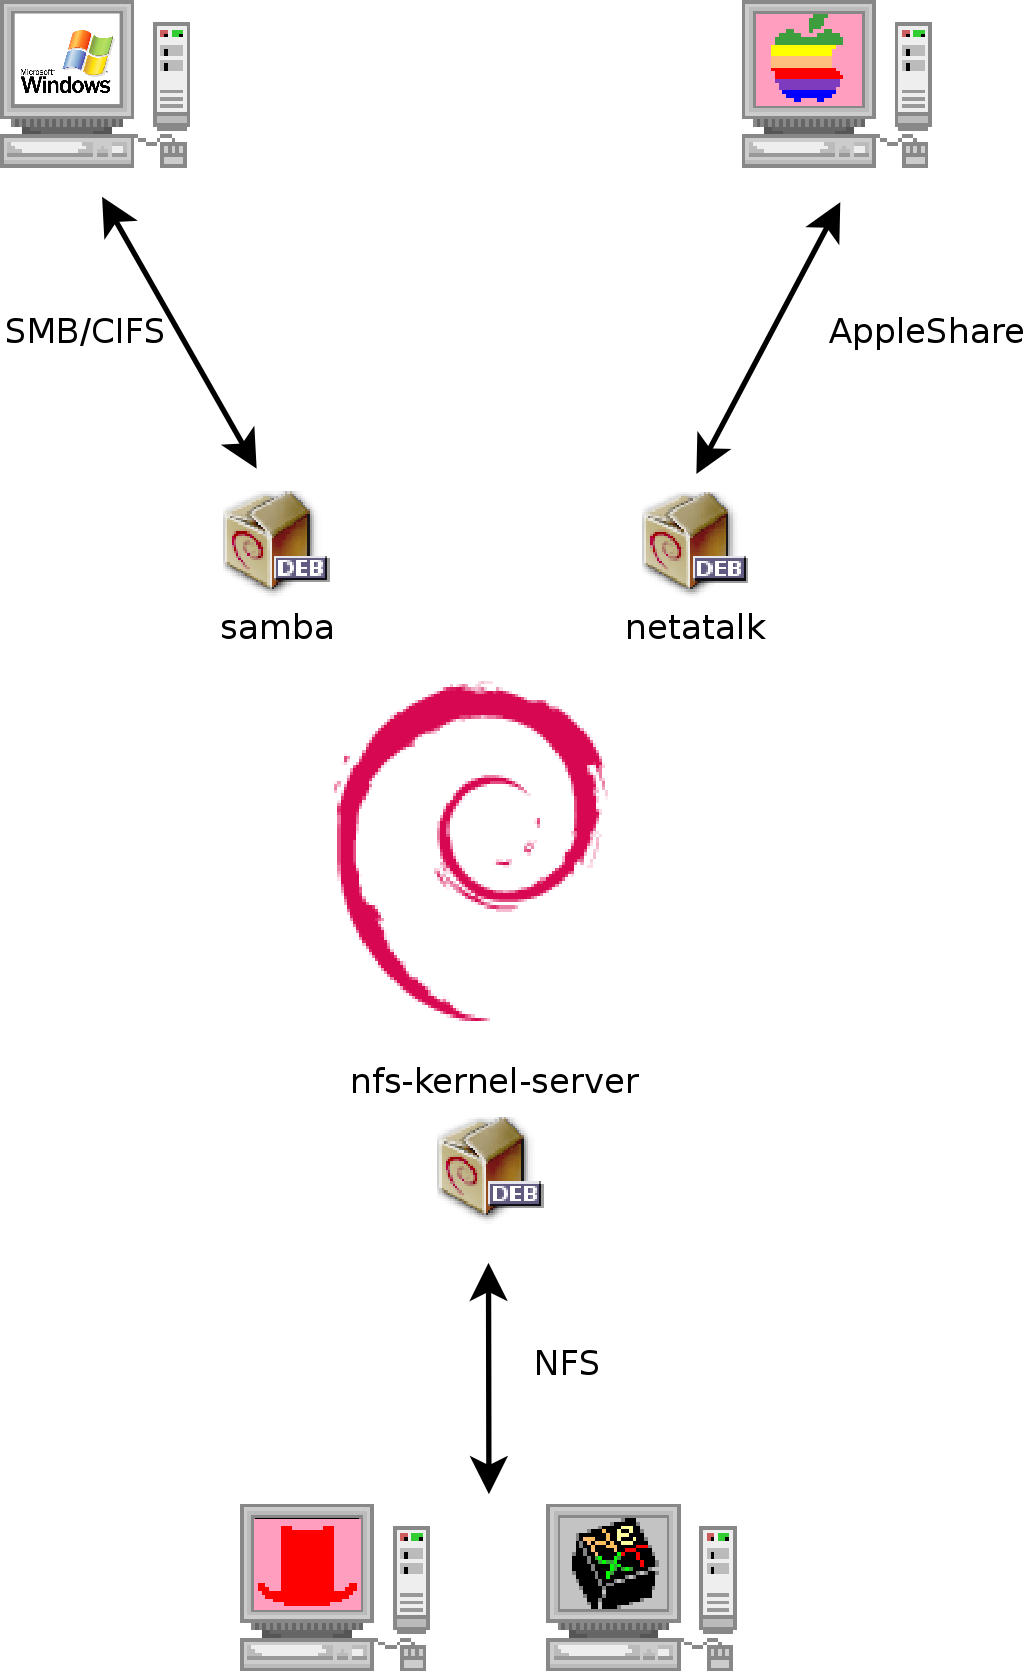 Co-existentie van Debian met OS X, Windows en Unix systemen